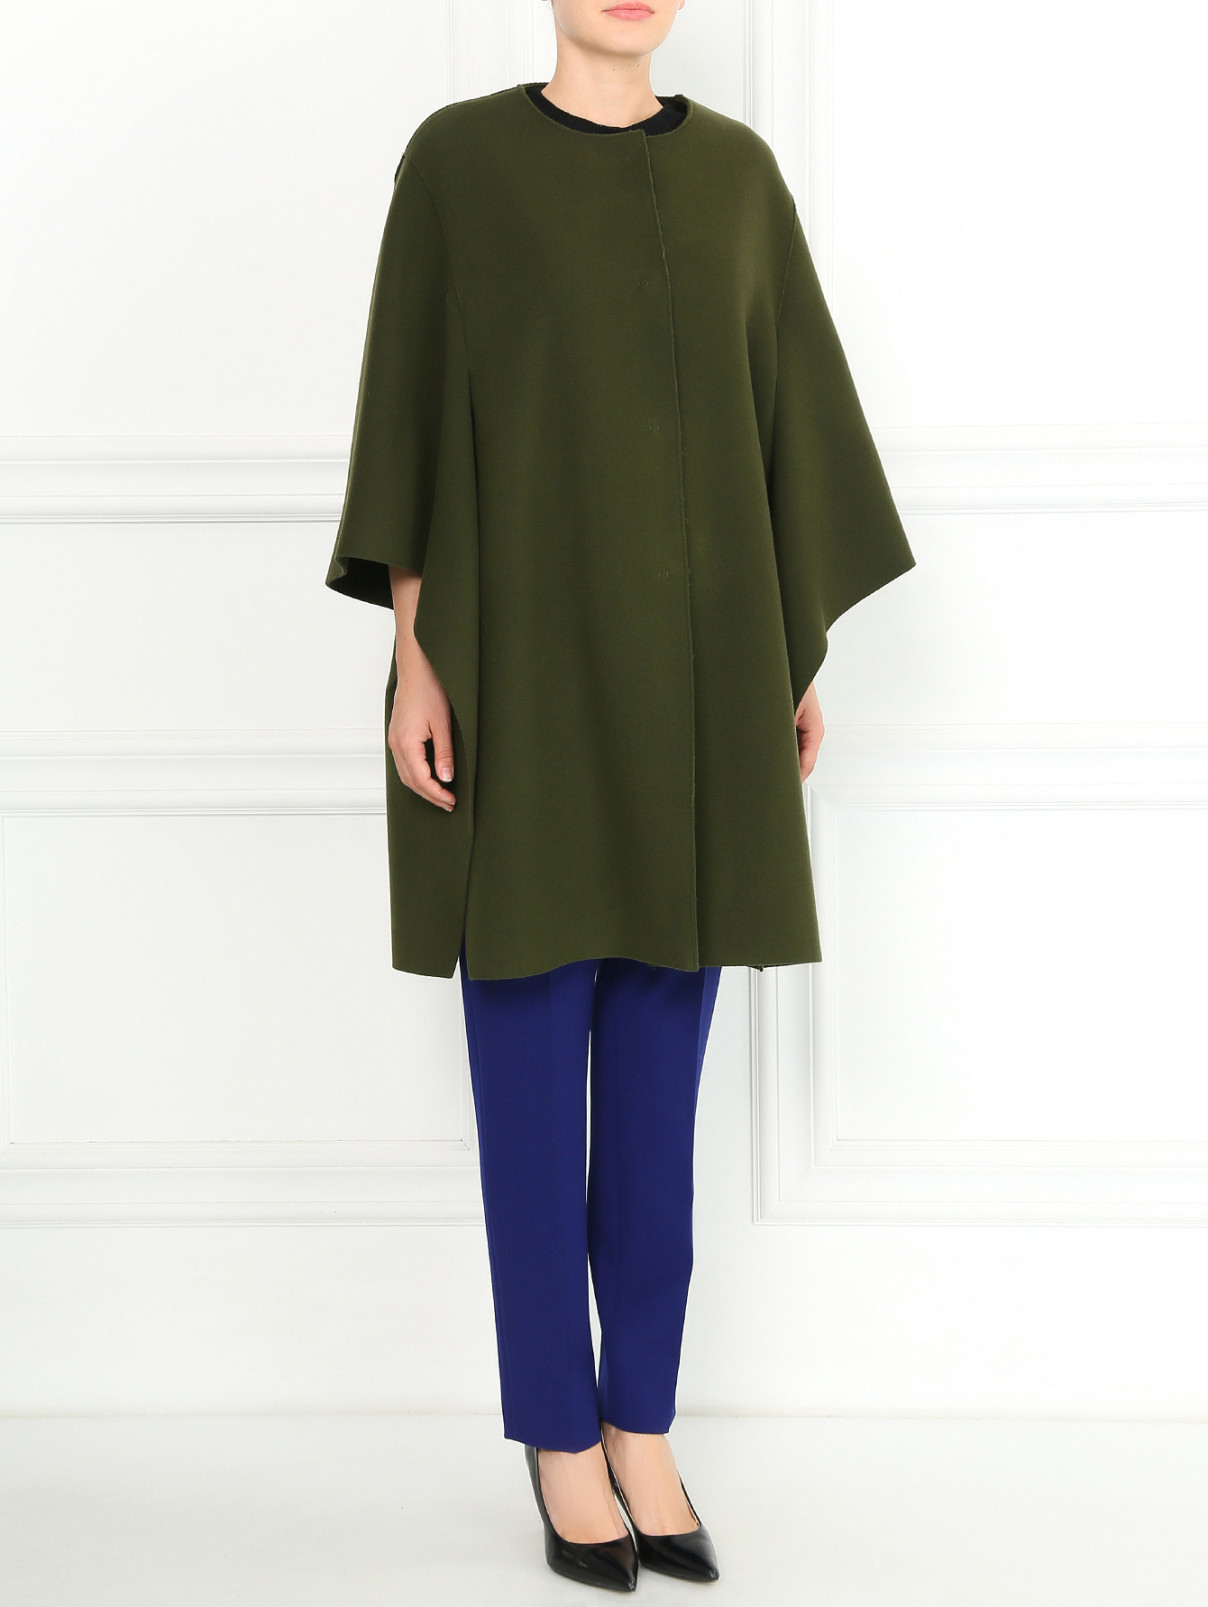 Короткое пальто из шерсти Alberta Ferretti  –  Модель Общий вид  – Цвет:  Зеленый